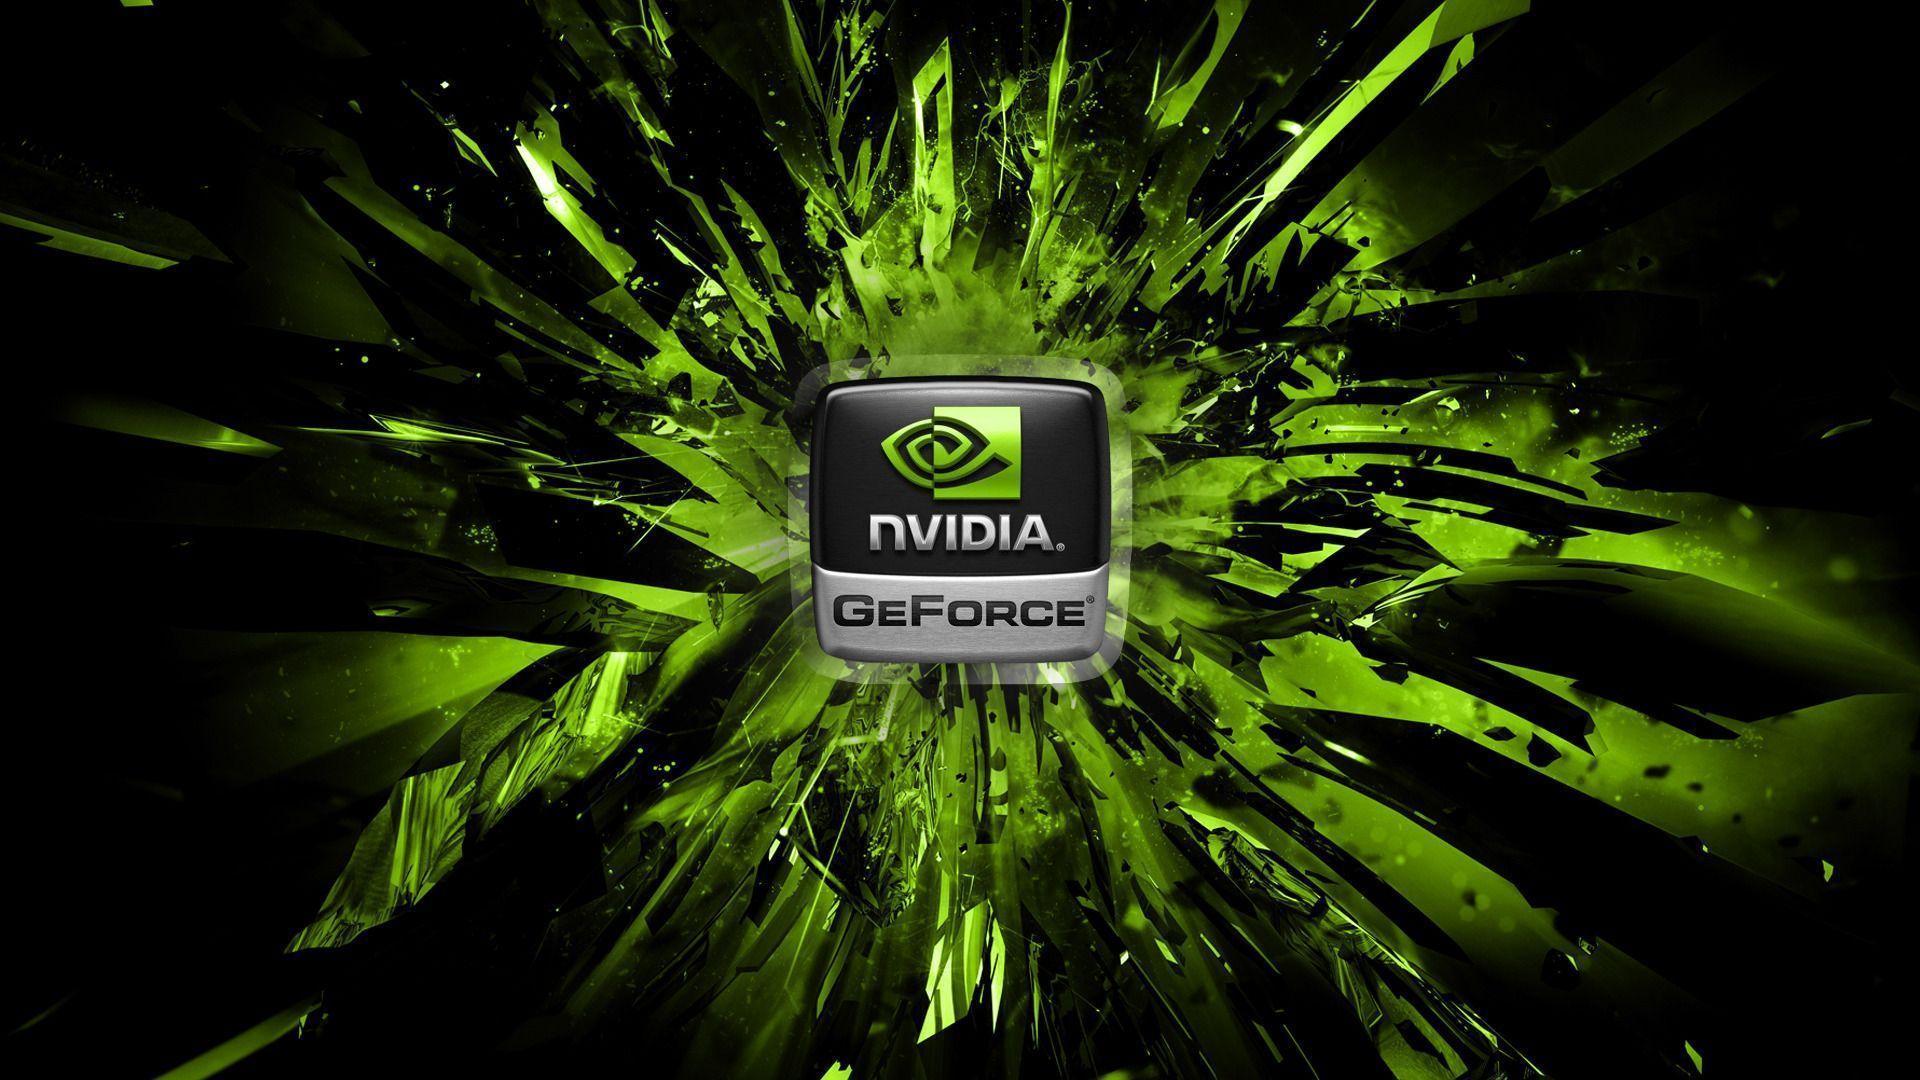 Nvidia Geforce Computer Hd Wallpaper 1920x1080 266 NVIDIA